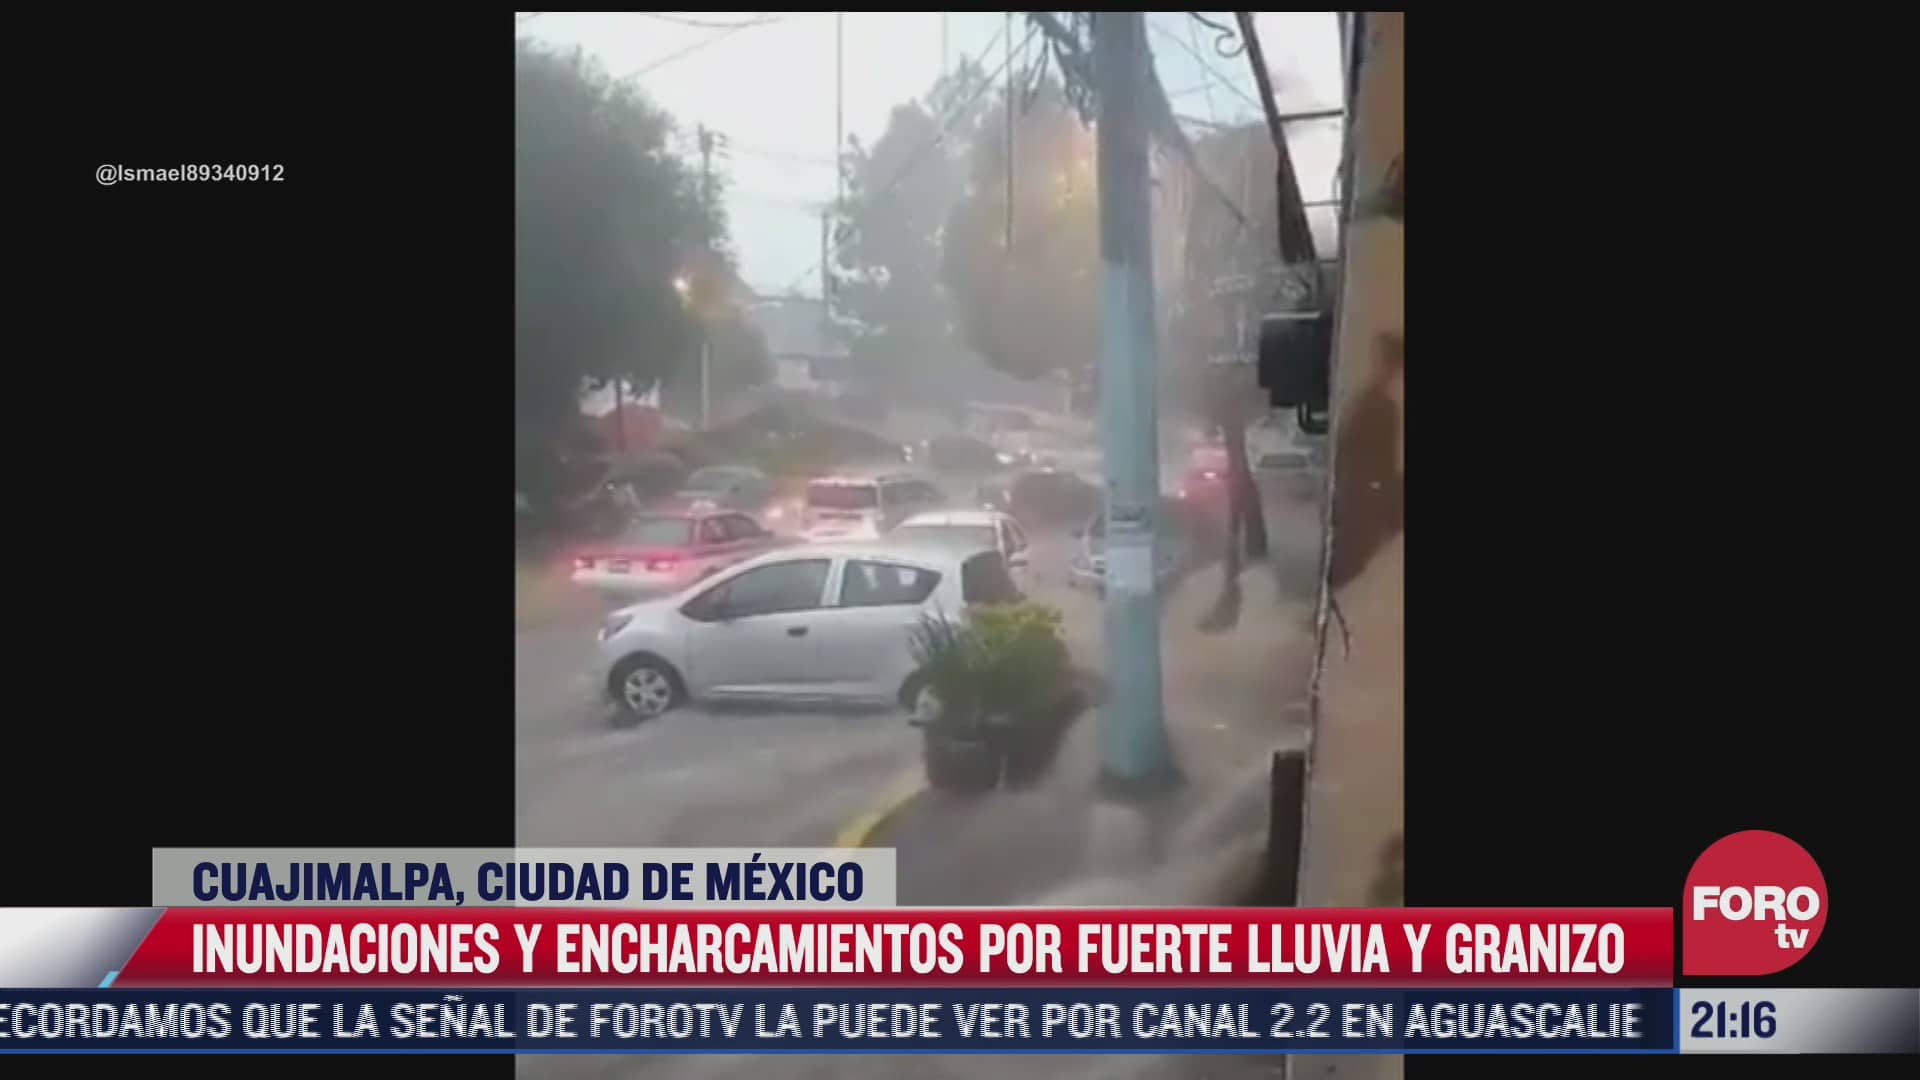 se registran fuertes lluvias e inundaciones en cuajimalpa